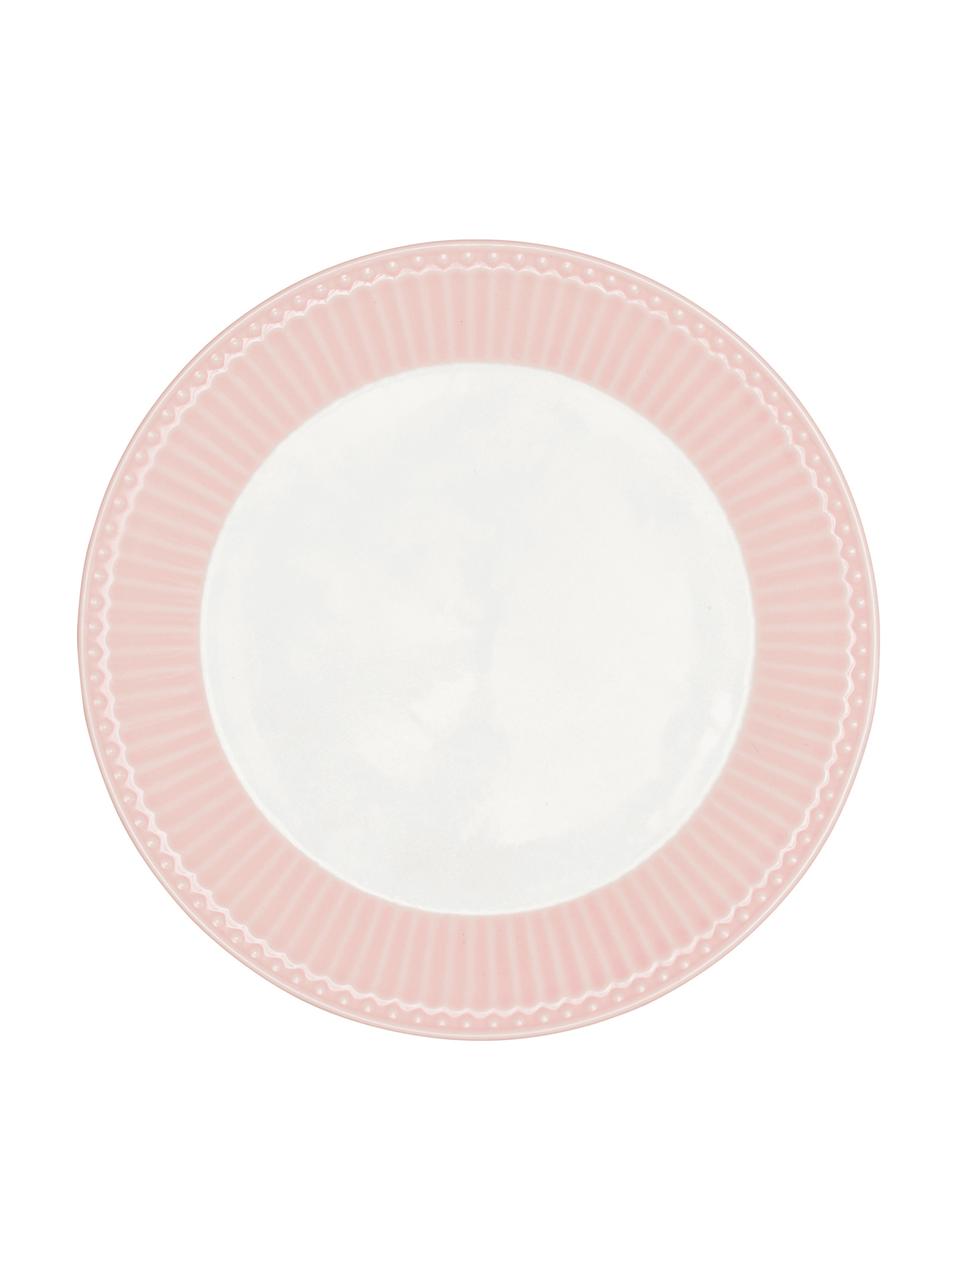 Handgemaakte ontbijtborden Alice in roze met reliëfdesign, 2 stuks, Porselein, Roze, wit, Ø 23 cm